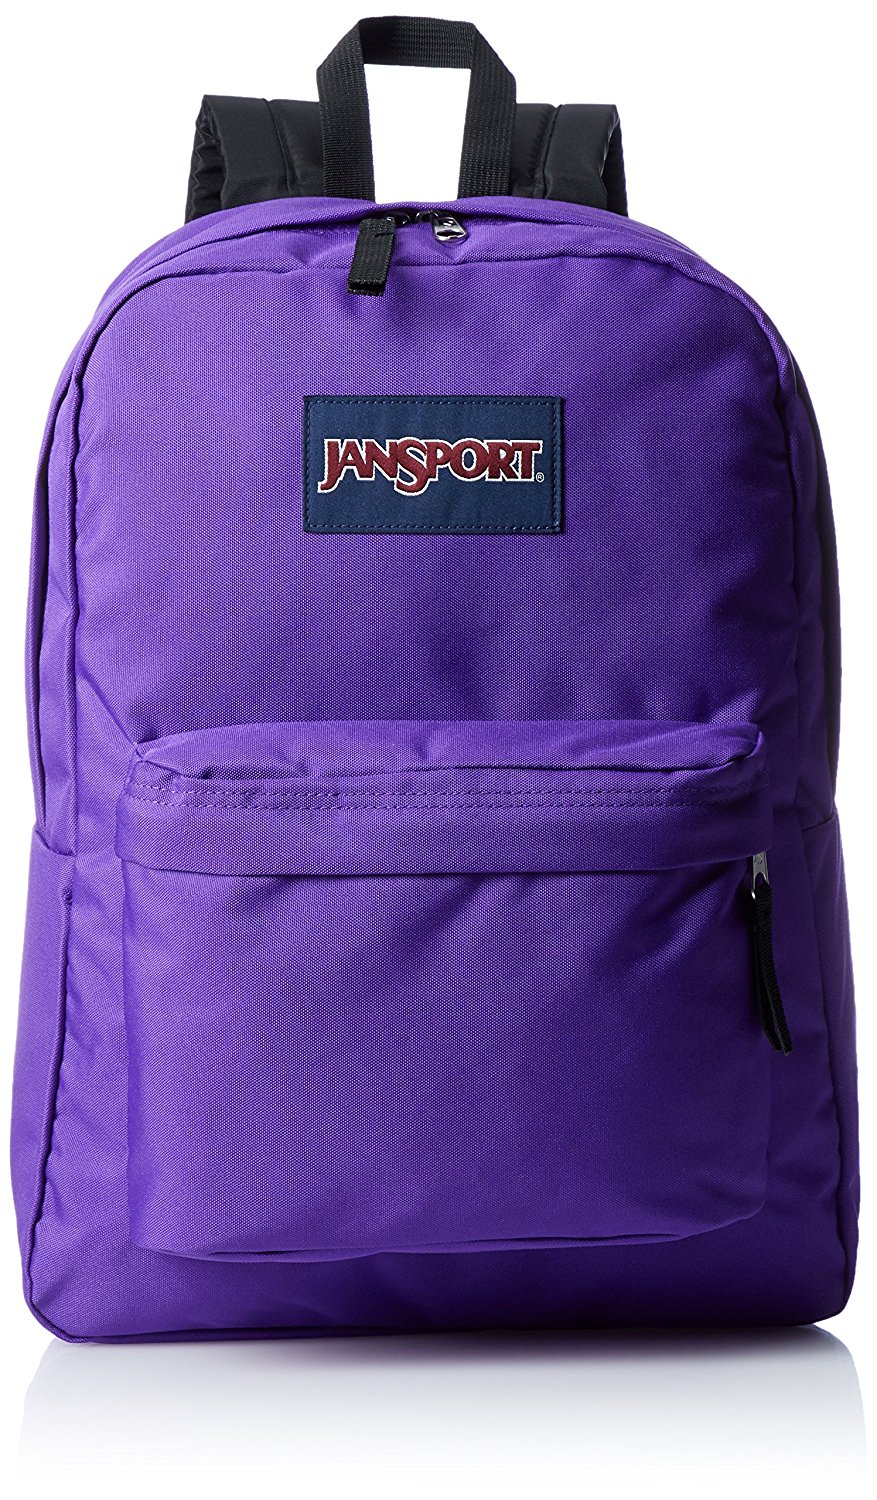 jansport monogrammed backpack